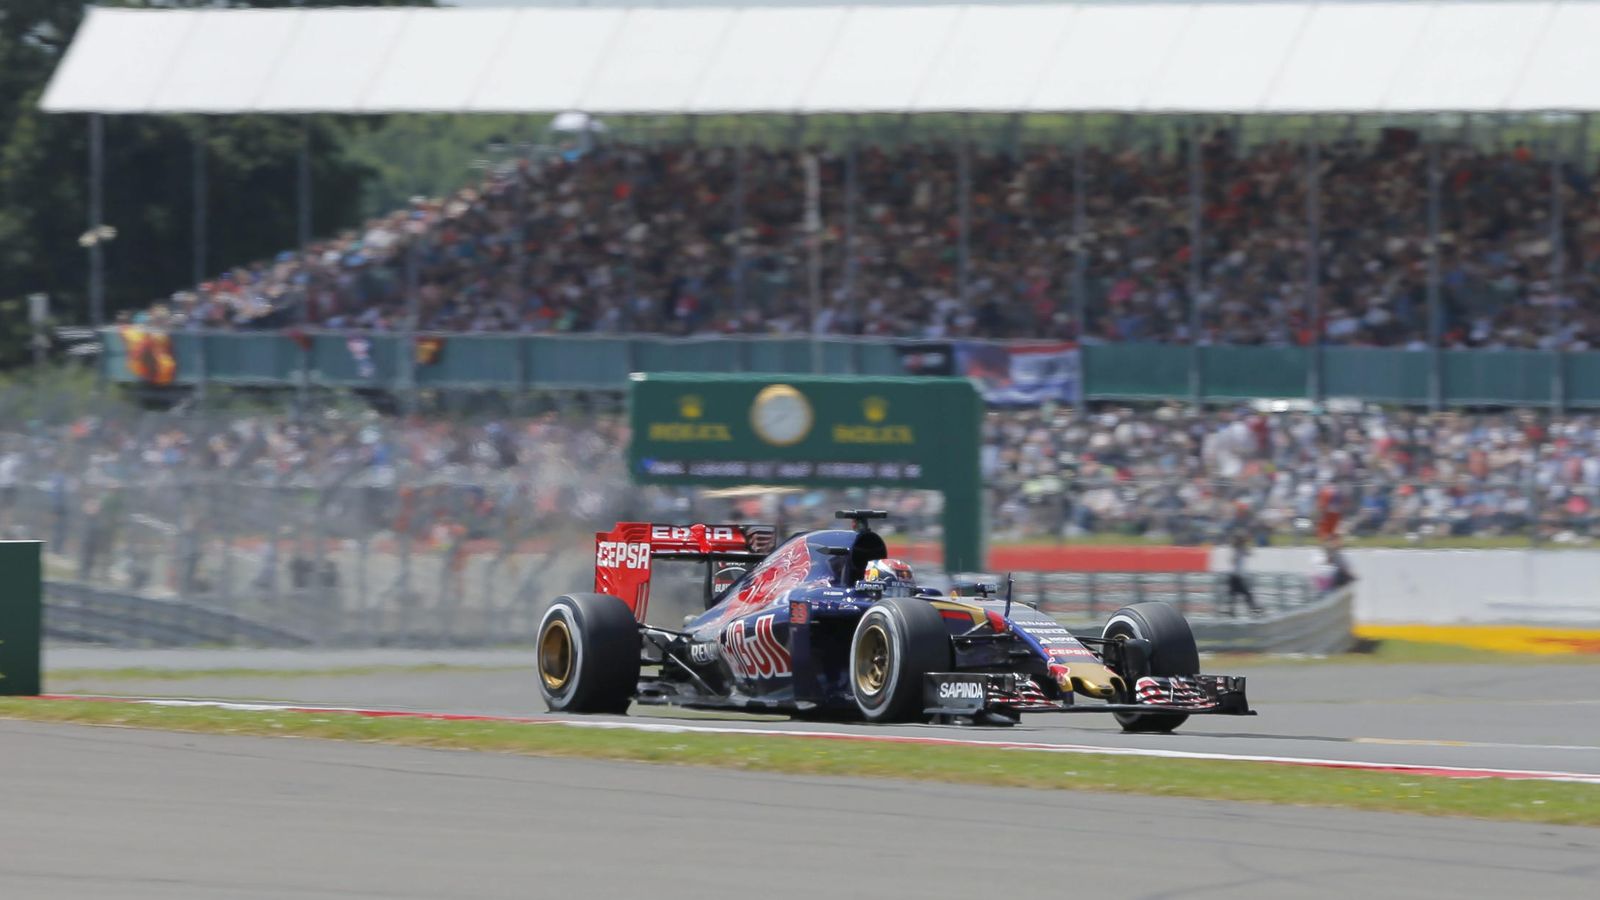 Foto: Max Verstappen en acción durante la clasificación del Gran Premio de Gran Bretaña (Efe)